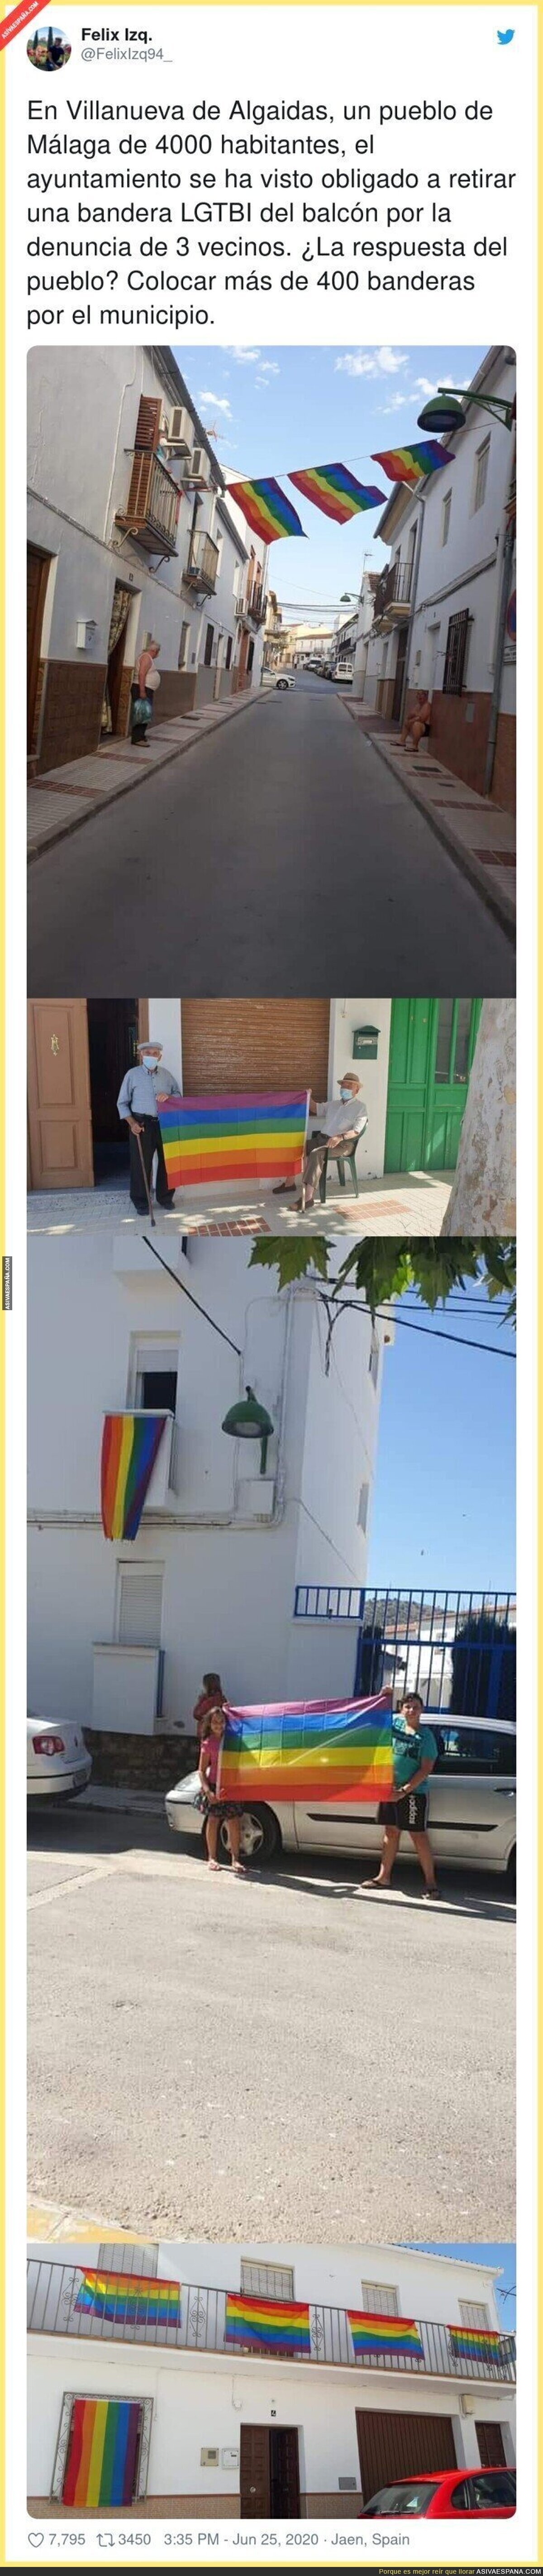 La gran respuesta del pueblo Villanueva de Algaidas tras verse obligado a retirar una bandera LGTBI de un balcón